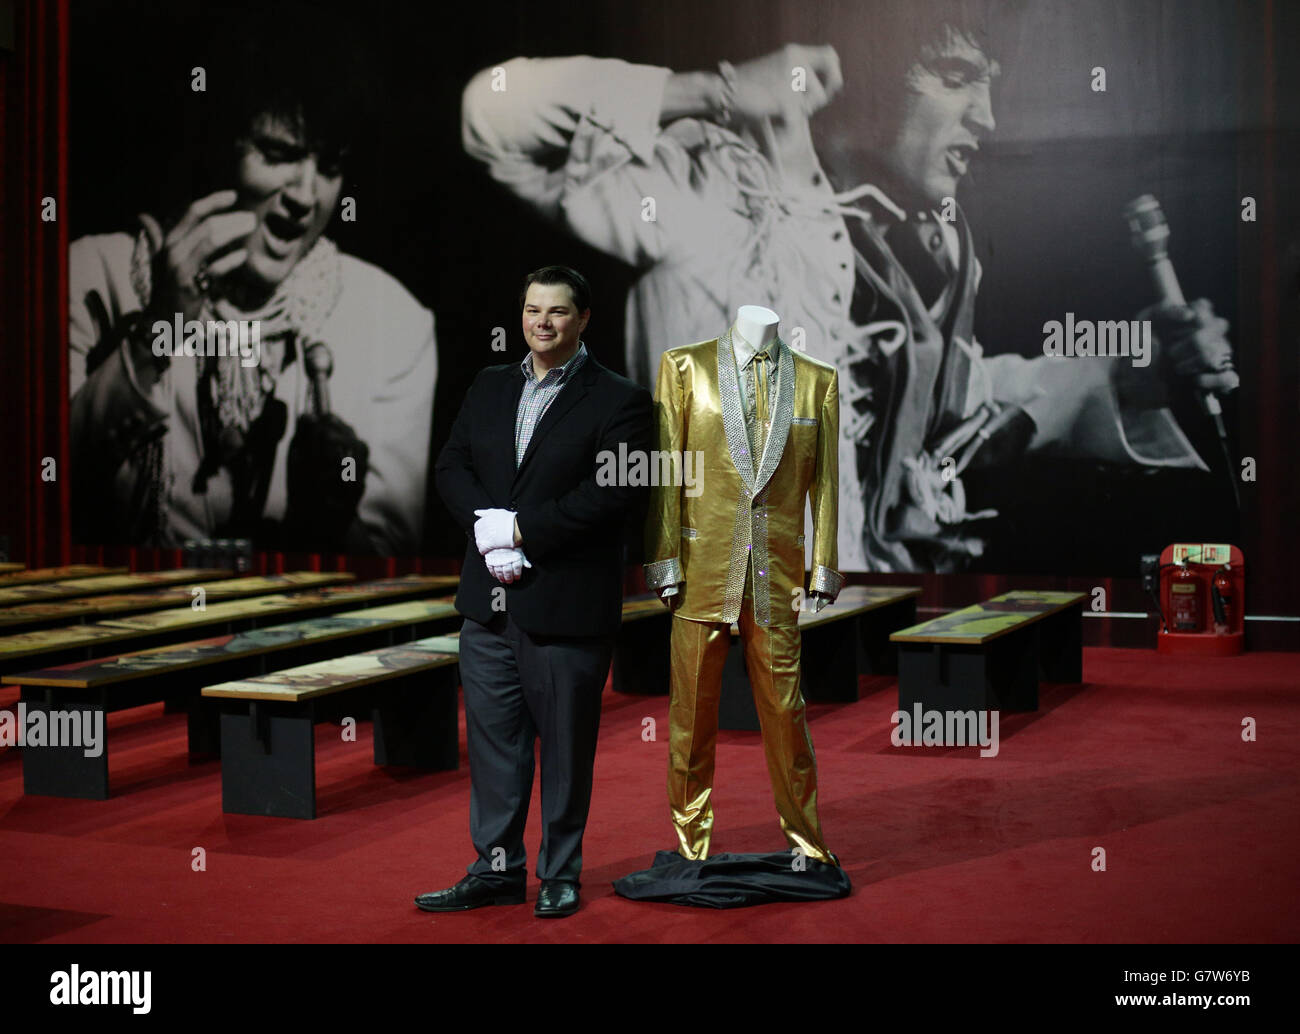 Il regista di Graceland Kevin Kern accanto alla Gold Suit di Elvis Presley, indossata dal cantante sulla copertina del suo album '50,000,000 Elvis Fans Can't Be Wrong', alla Elvis Exhibition 02, presso la O2 di Londra. Foto Stock